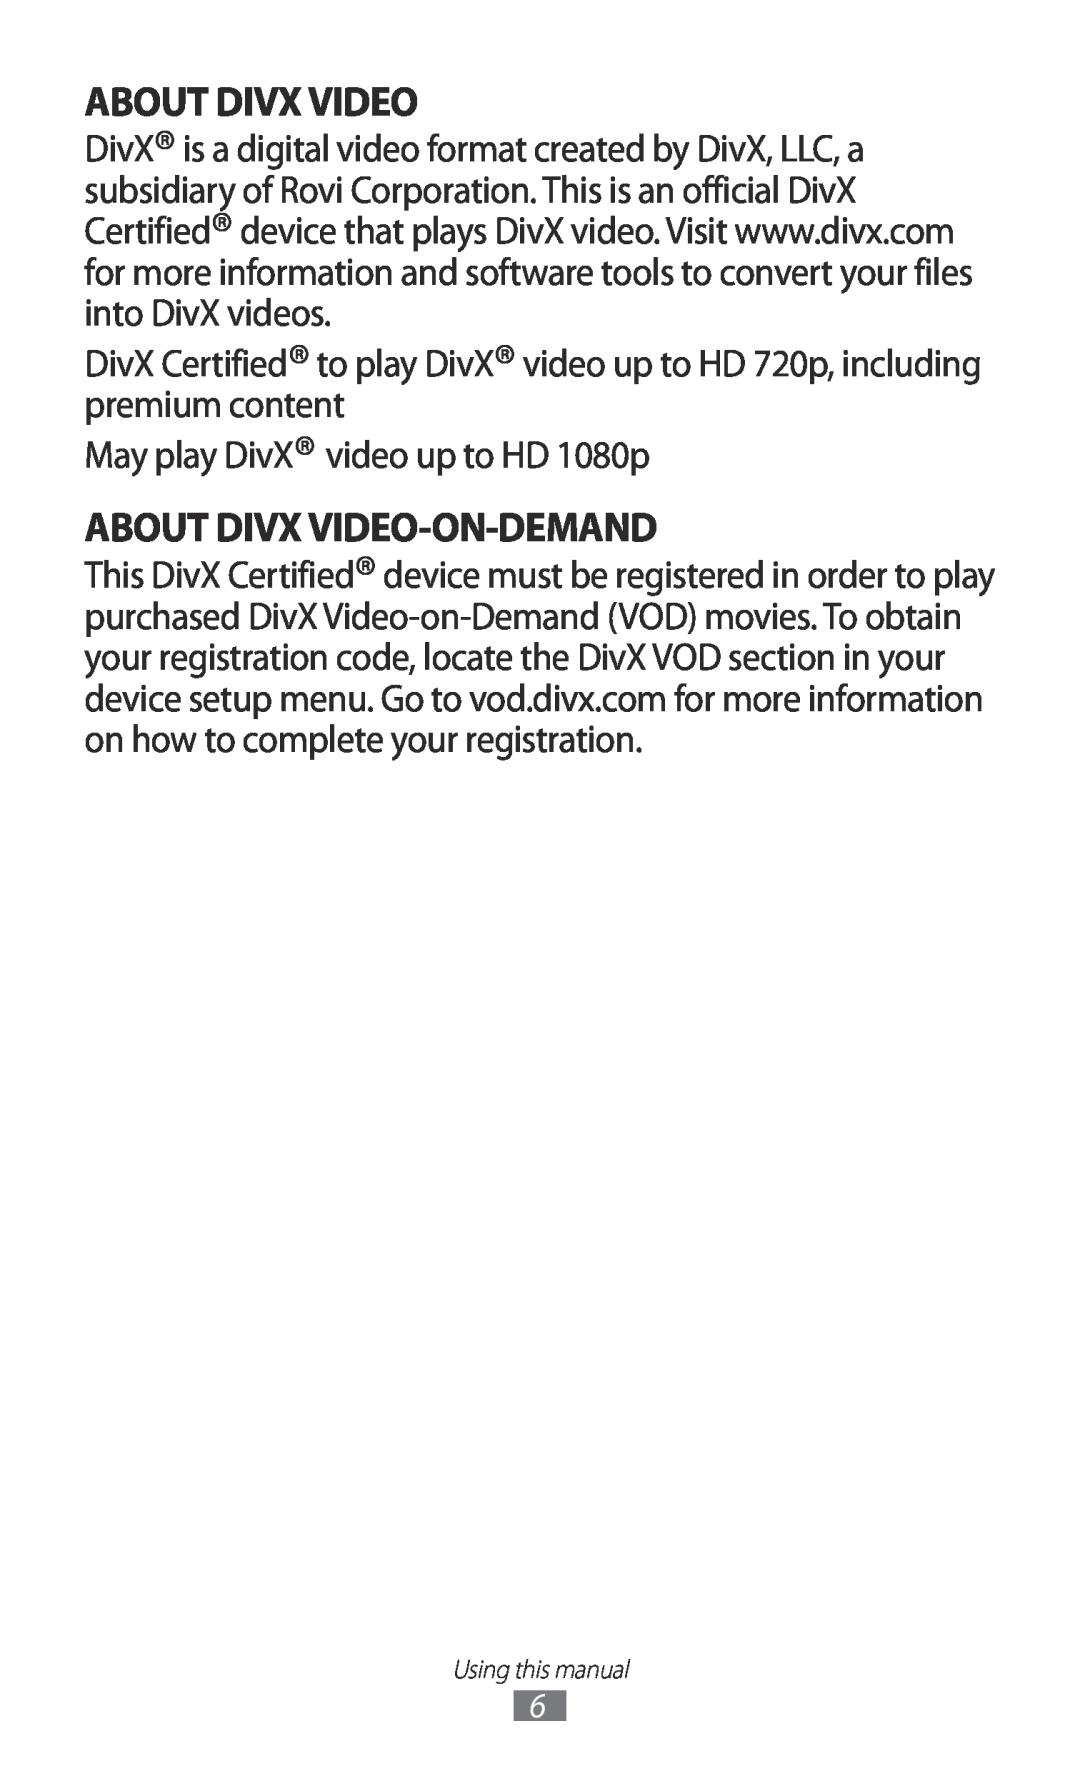 Samsung GT-P7320FKAFTM, GT-P7320UWAVD2, GT-P7320FKAOPT About Divx Video-On-Demand, May play DivX video up to HD 1080p 